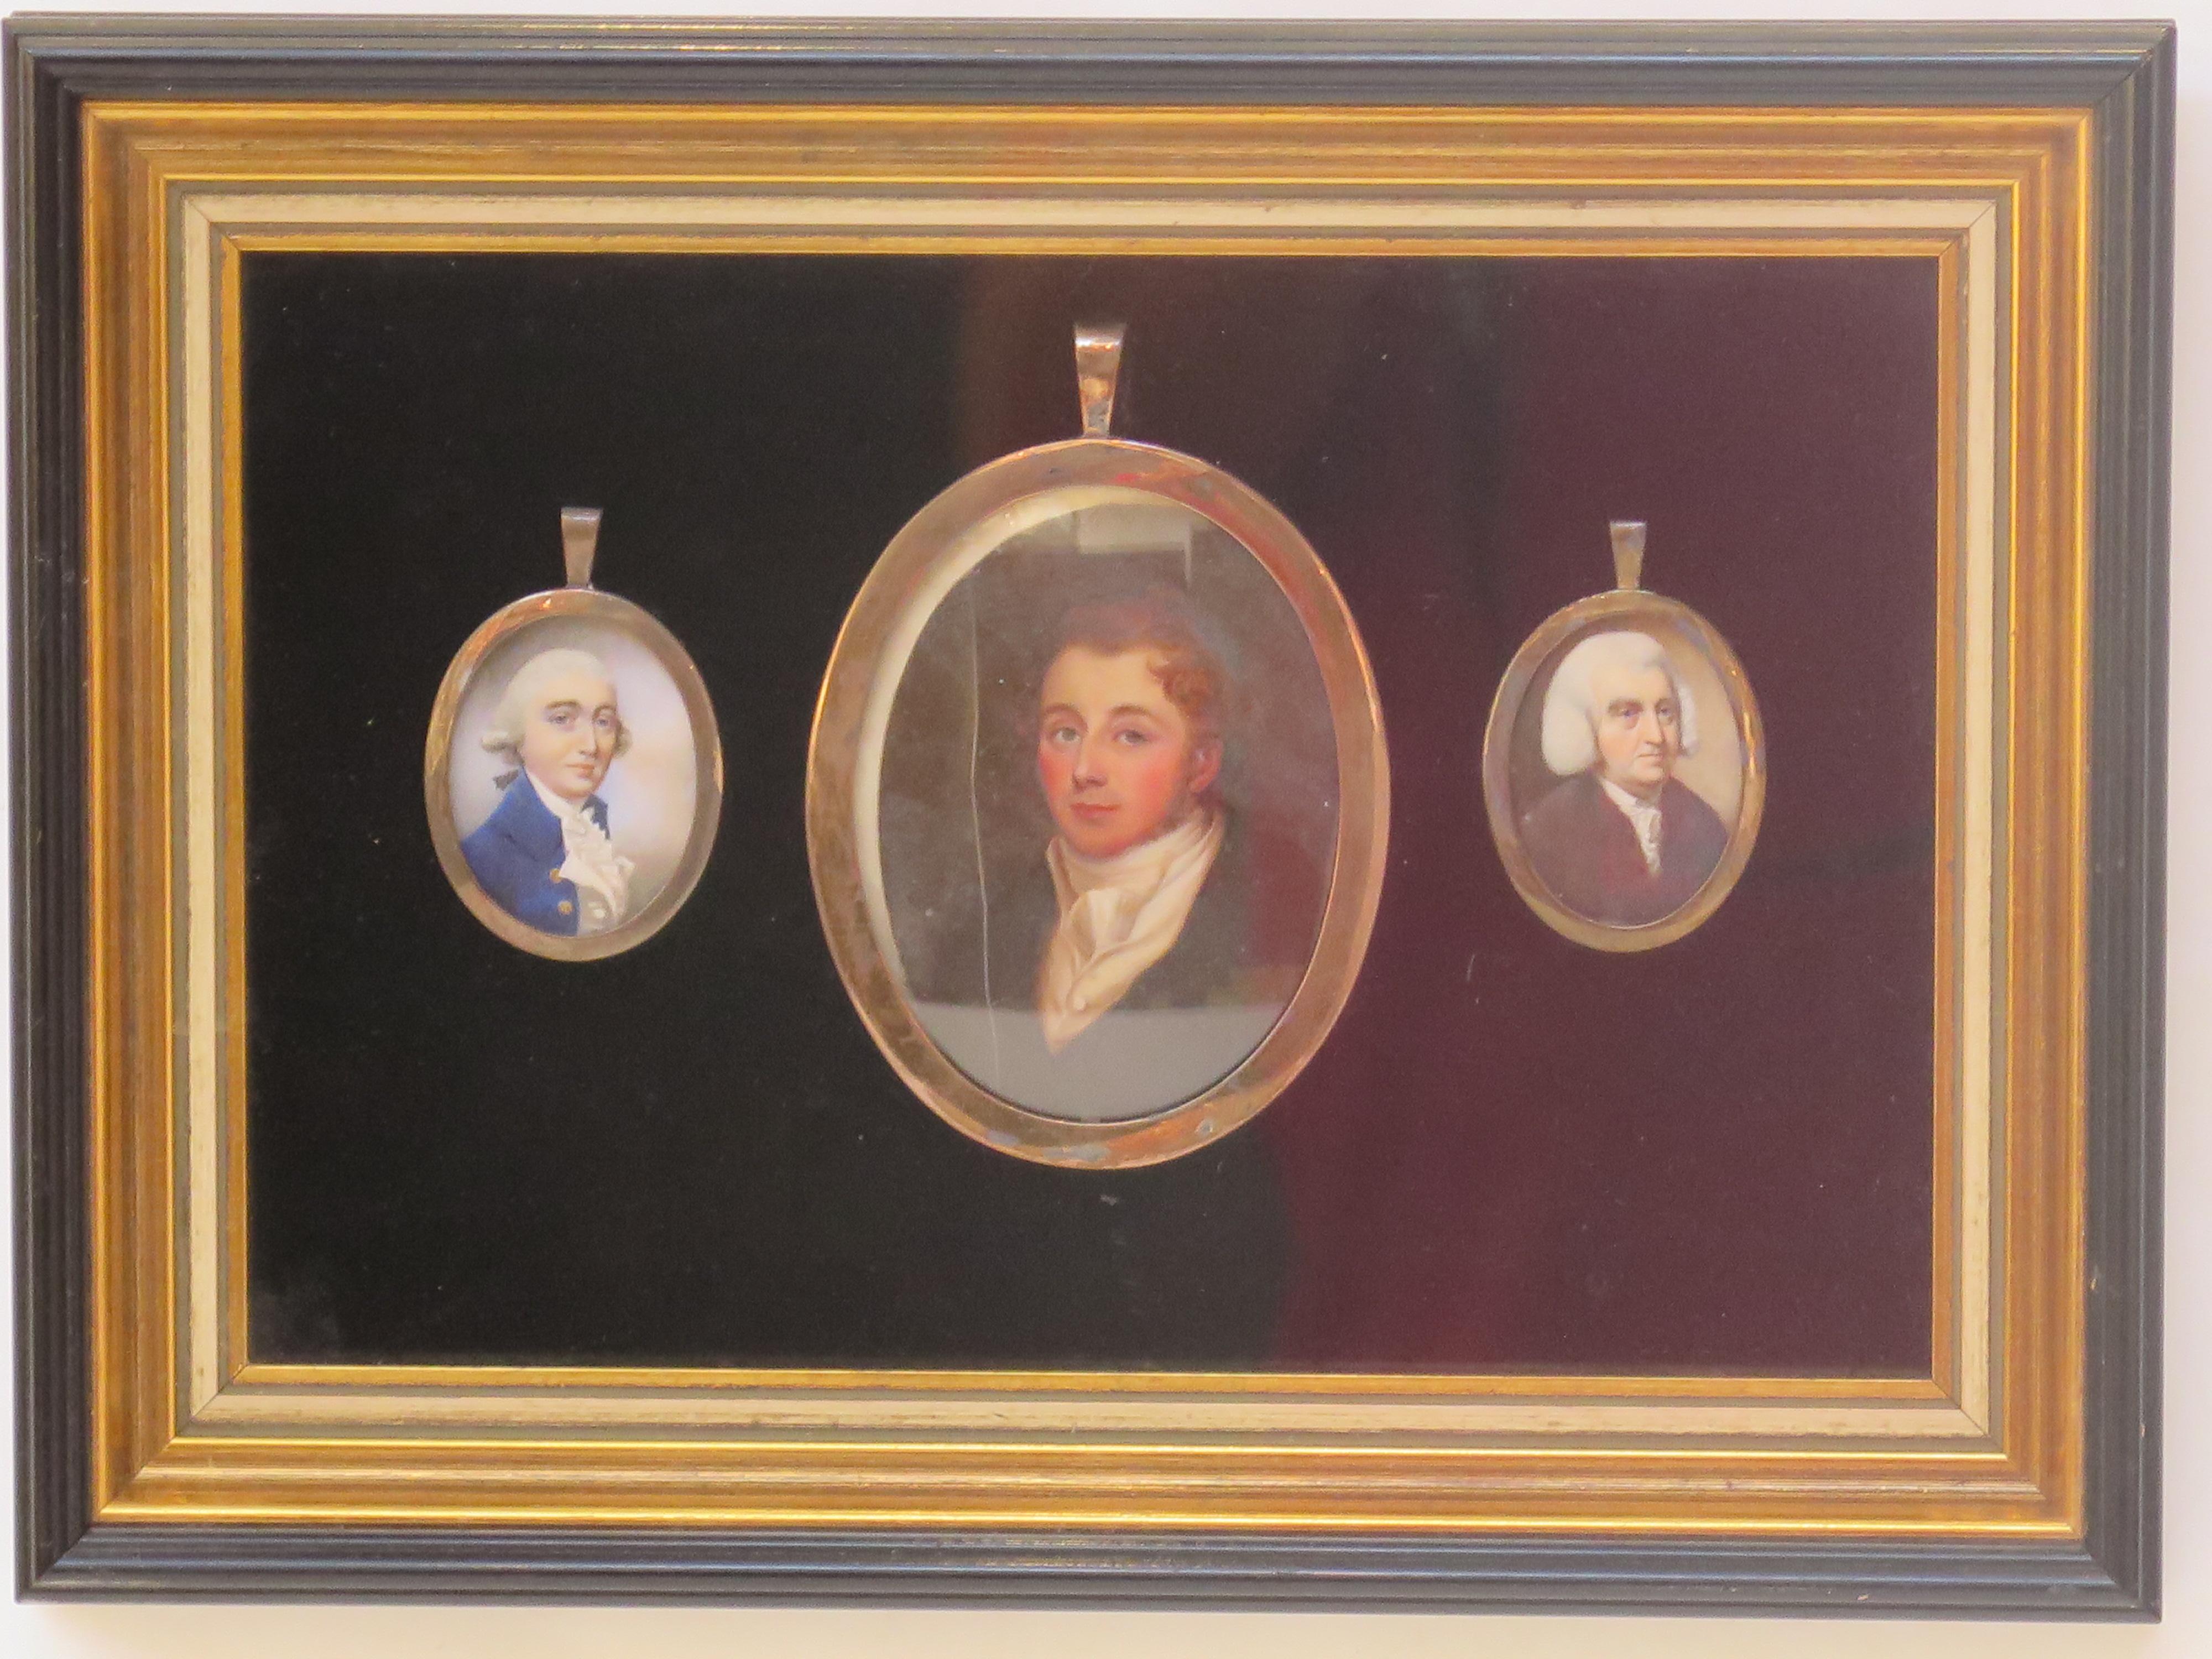 eine Gruppe oder Sammlung von drei Miniatur-Porträtgemälden von Herren, zusammen gerahmt, das mittlere größere Bild, English Regency, zeigt einen jüngeren Mann mit braunem Haar, gekleidet in einem damals populären Stil, die anderen kleinen Ovale